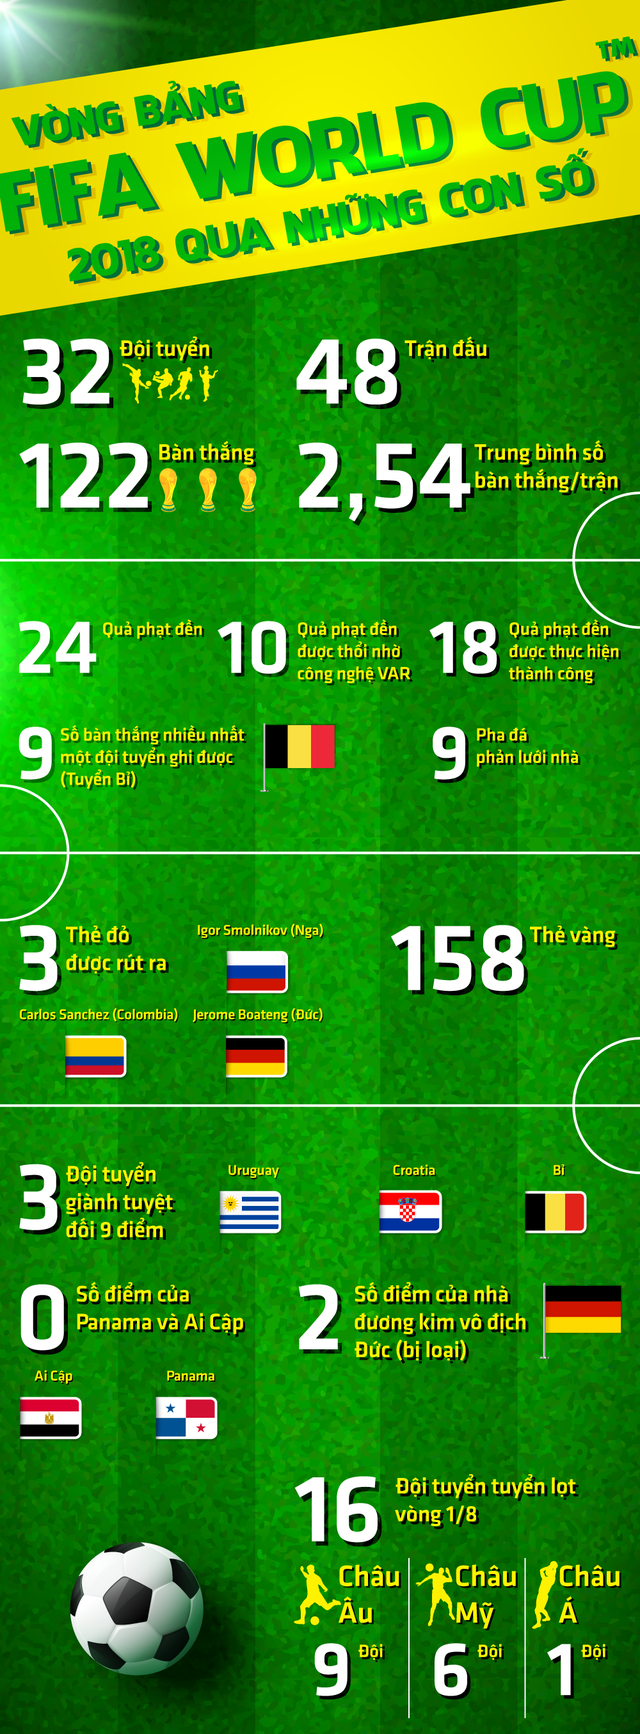 Vòng bảng FIFA World Cup™ 2018 và những con số biết nói - Ảnh 1.